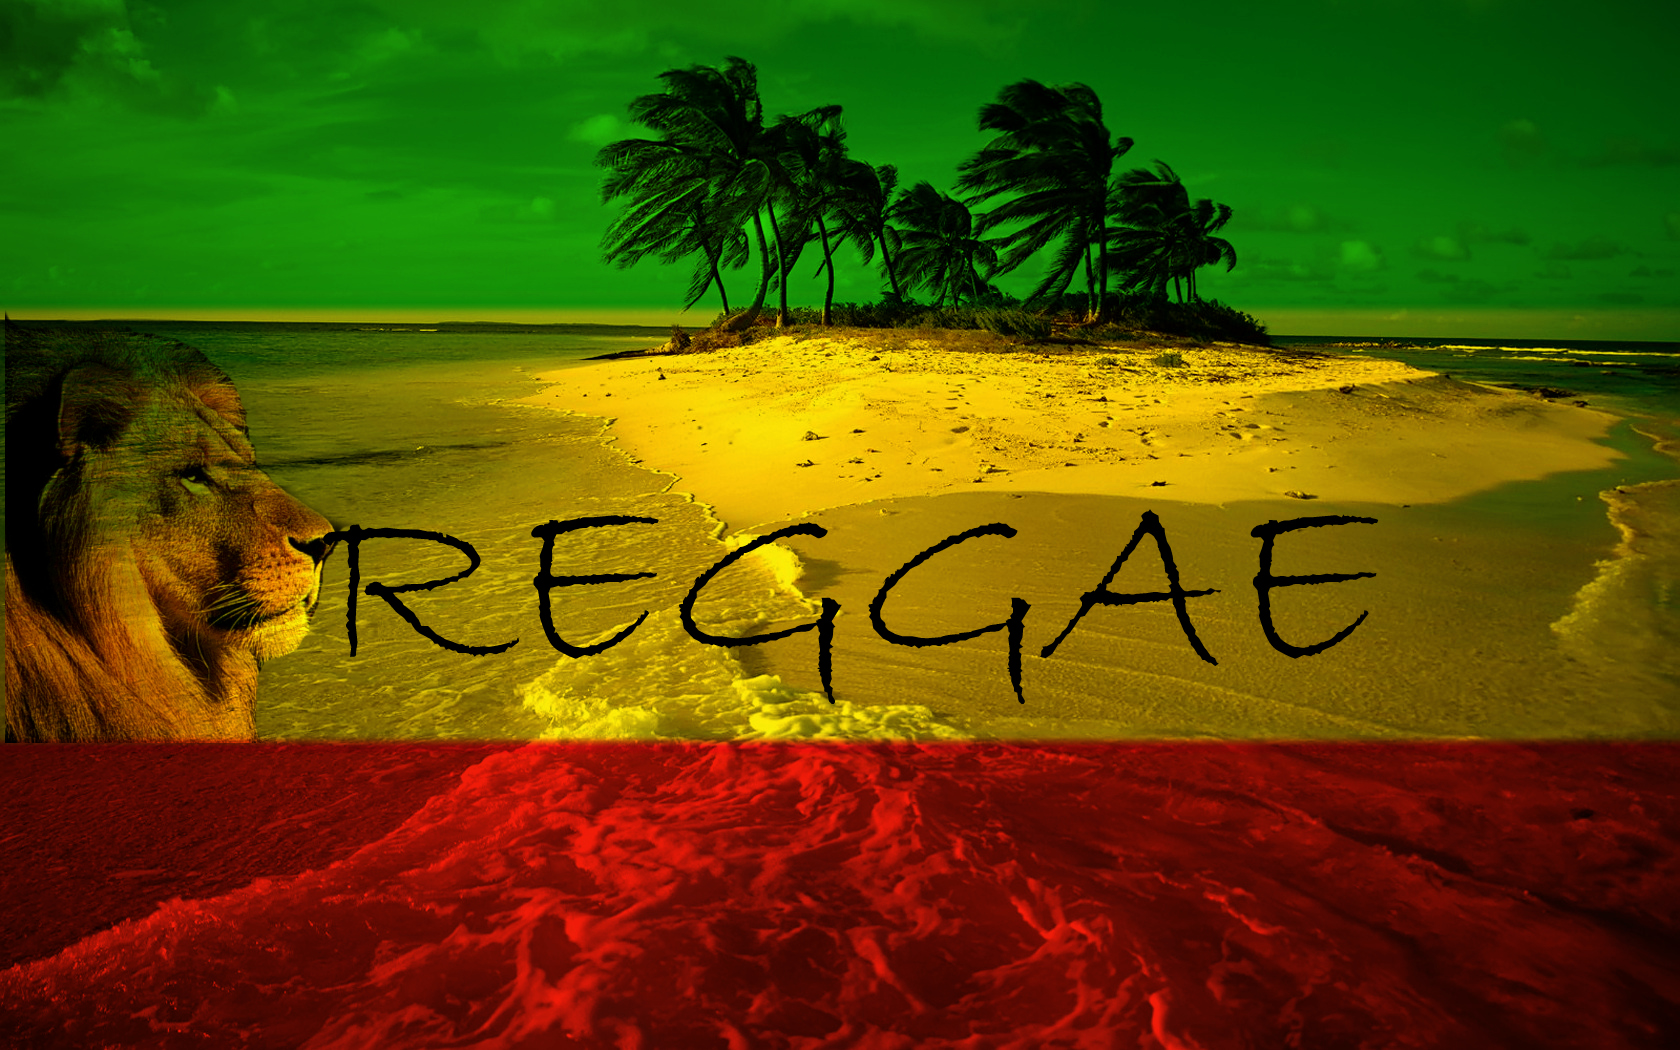 50+] Free Reggae Wallpapers for Tablet - WallpaperSafari